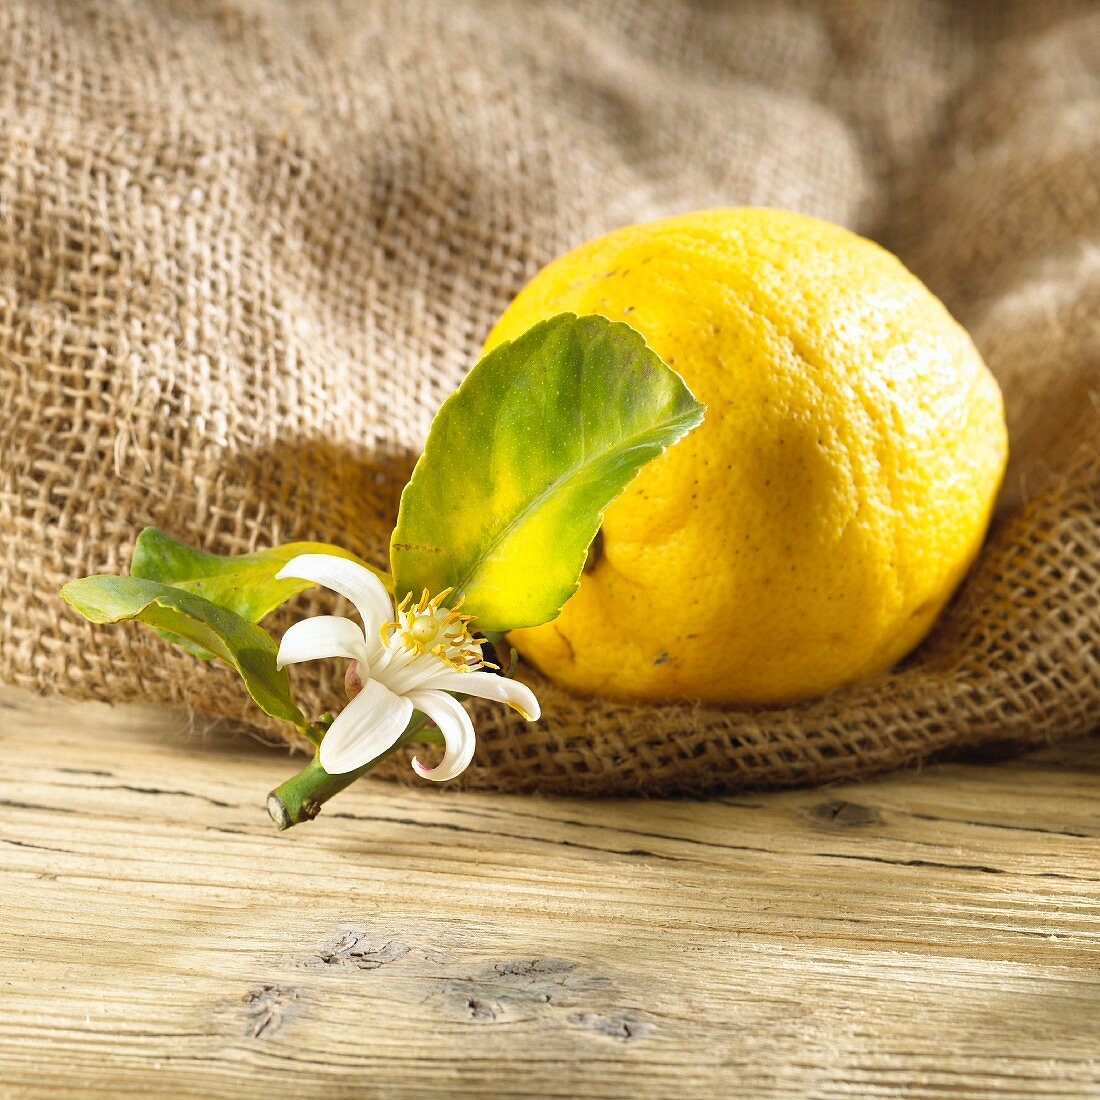 A lemon with a leaf and flower on a hessian sack